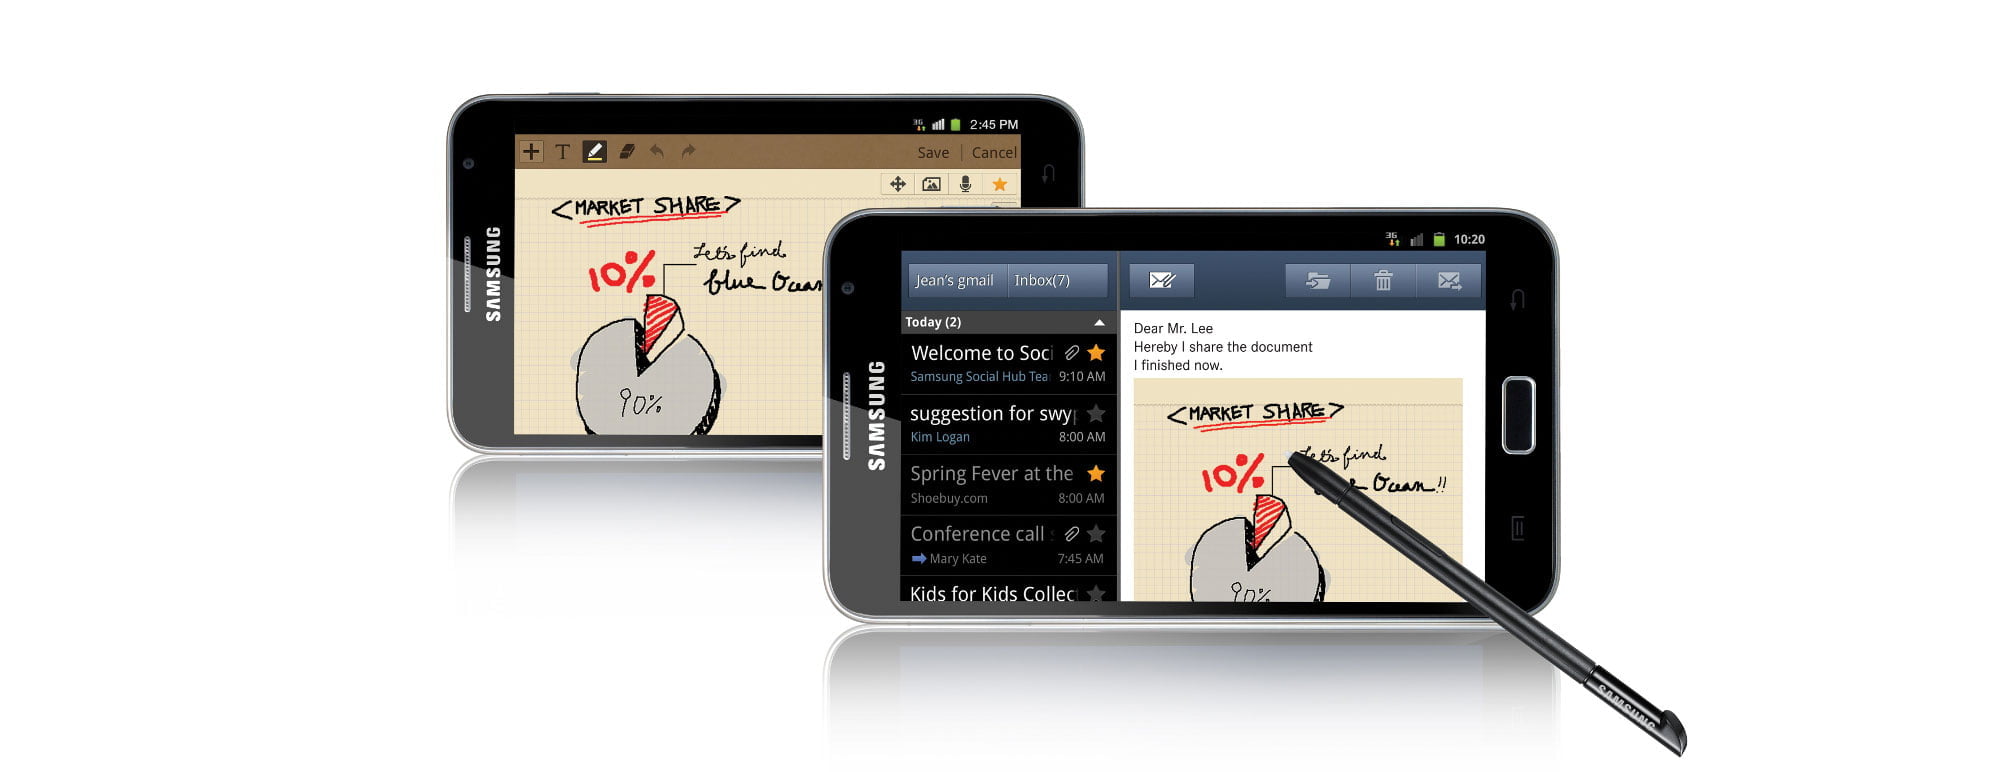 Samsung Galaxy Note, “combinación” de smartphone y tablet, ya disponible en Perú